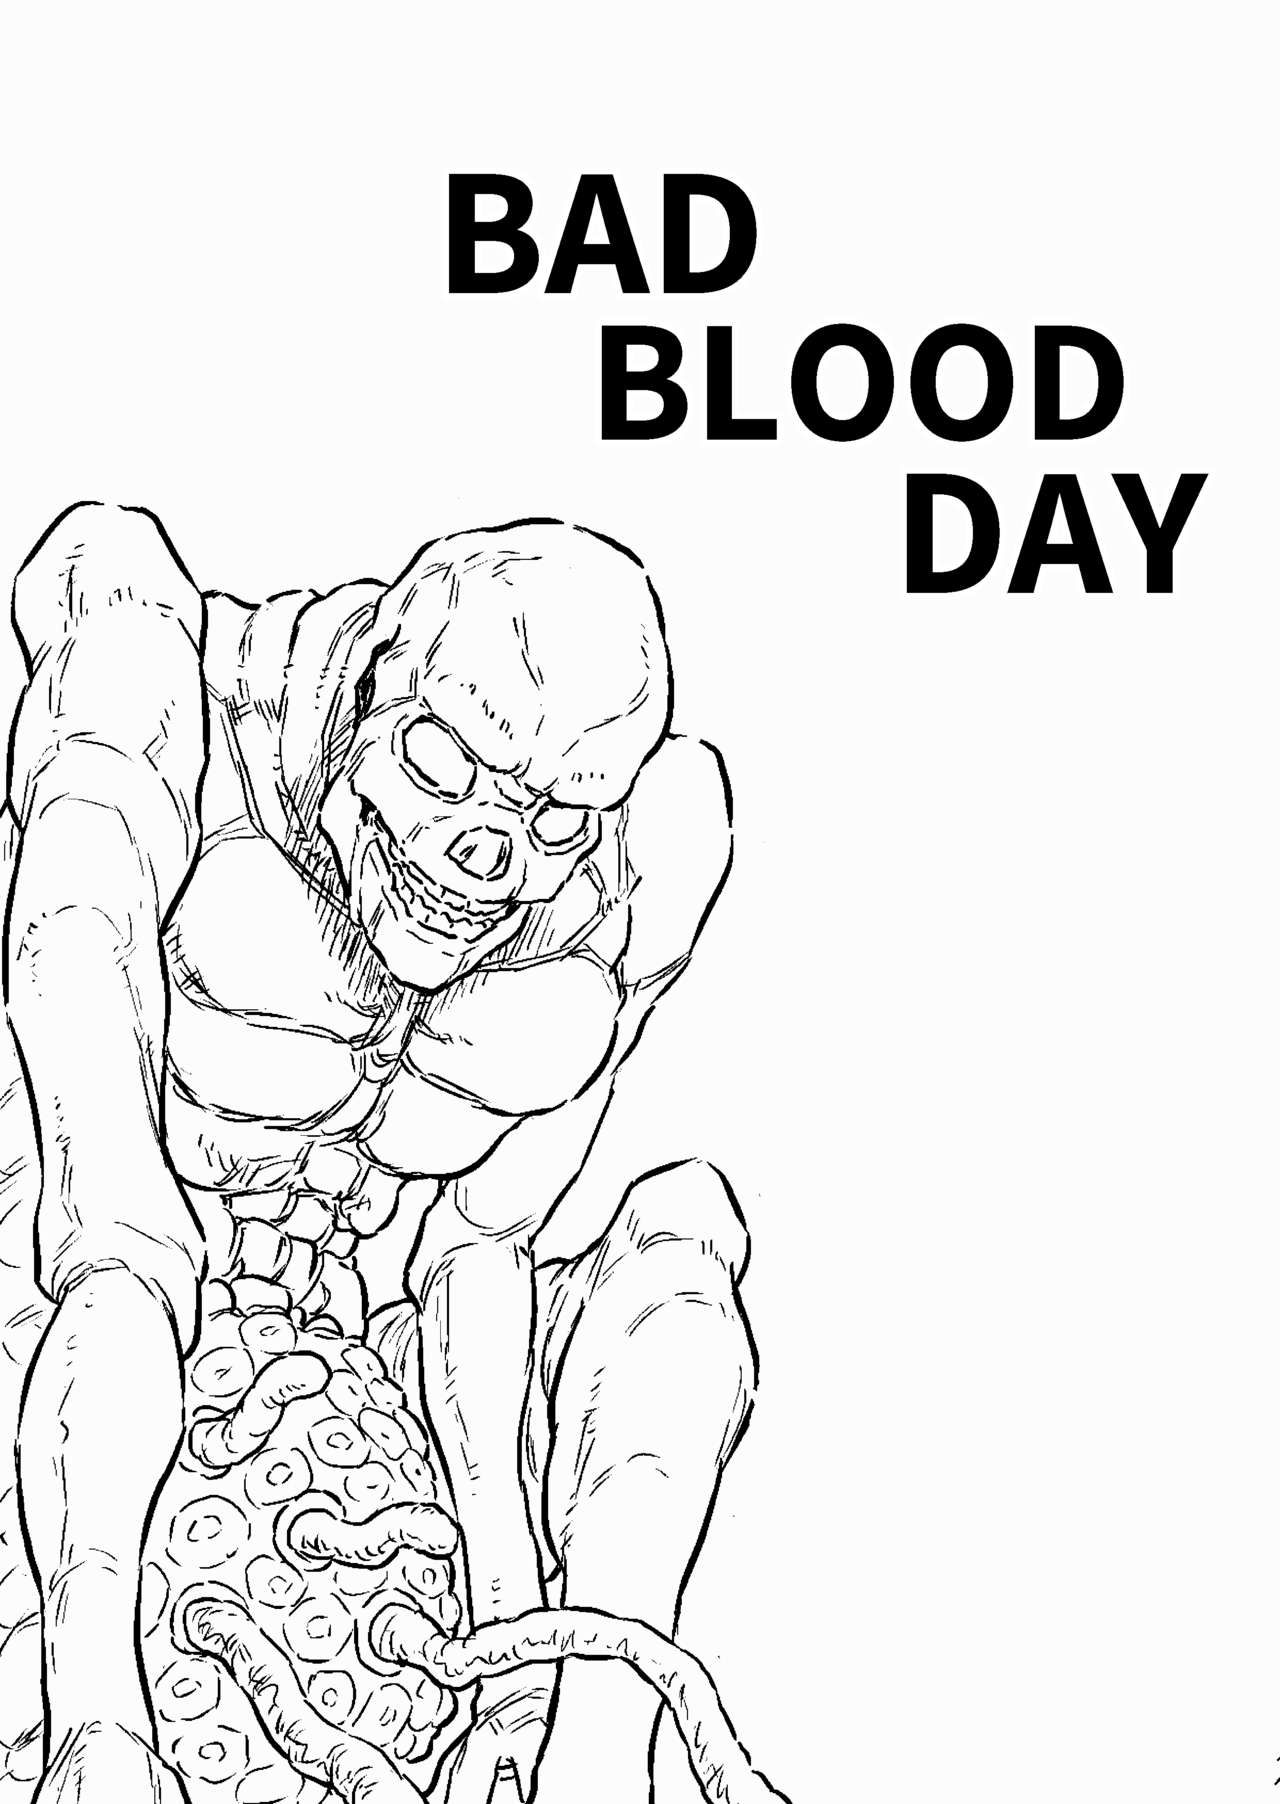 [ブルー・パーカッション (ボーン)] BAD BLOOD DAY『蠢く触手と壊されるヒロインの体』